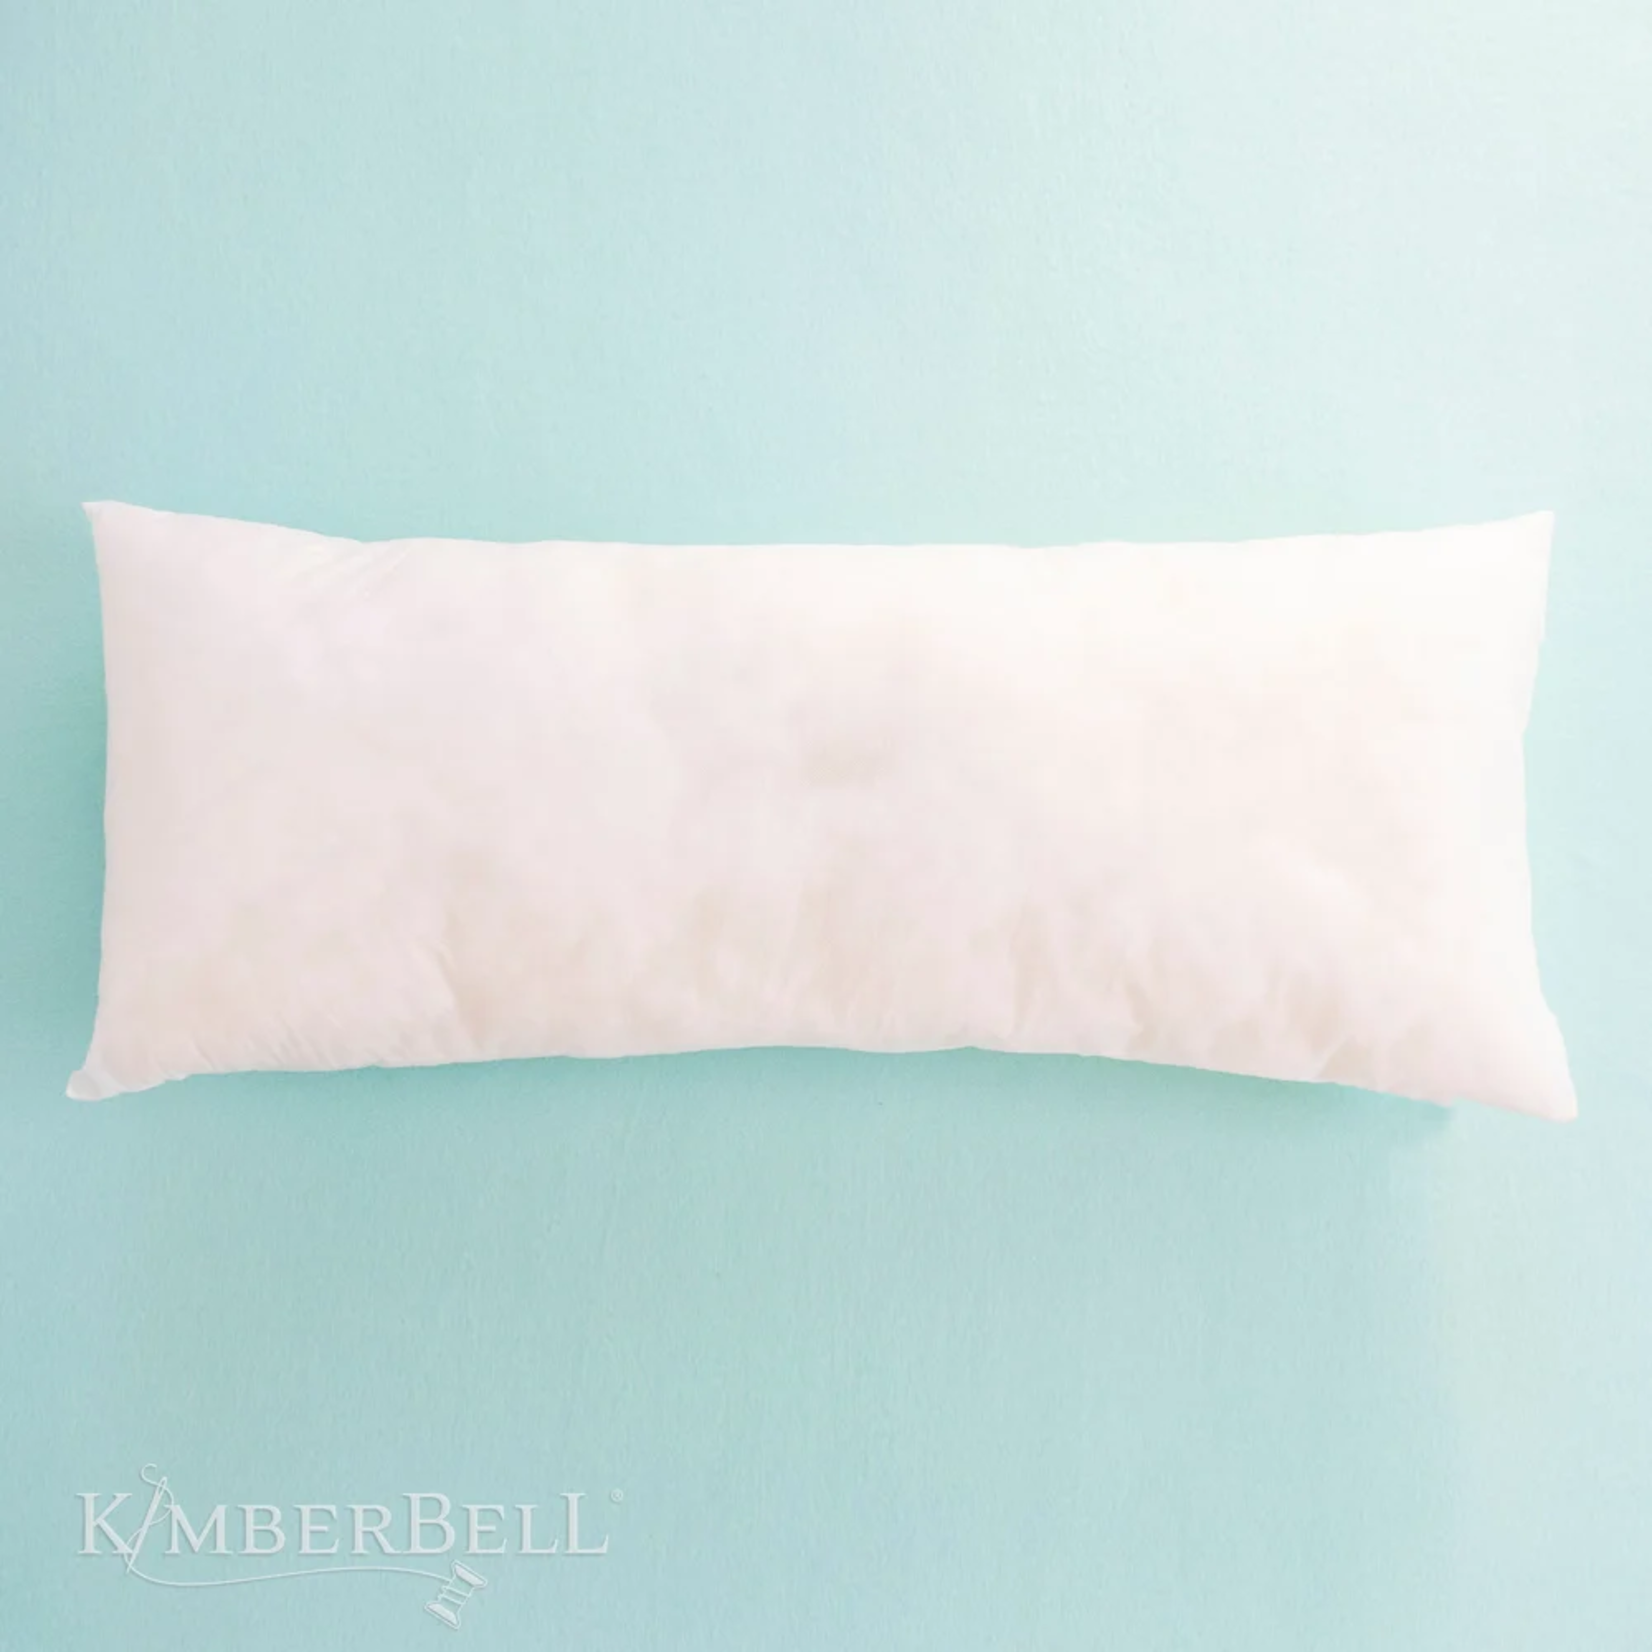 Kimberbell Designs Pillow Insert, 16 x 38"